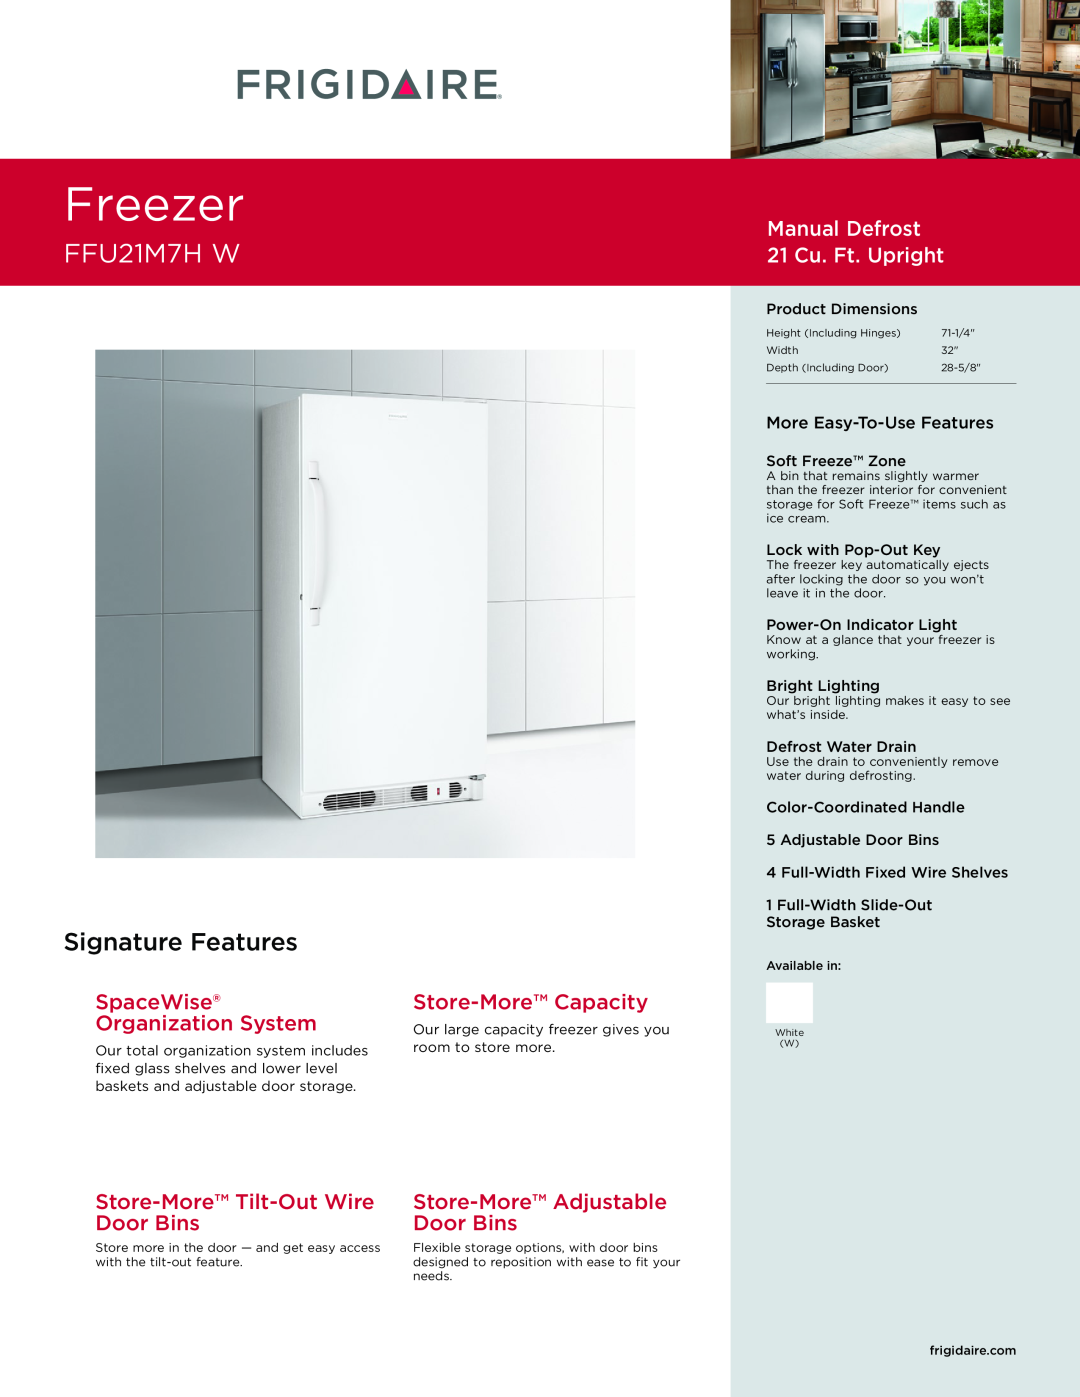 Frigidaire FFU21M7HW dimensions Freezer, FFU21M7H W, Signature Features, Manual Defrost 21 Cu. Ft. Upright 